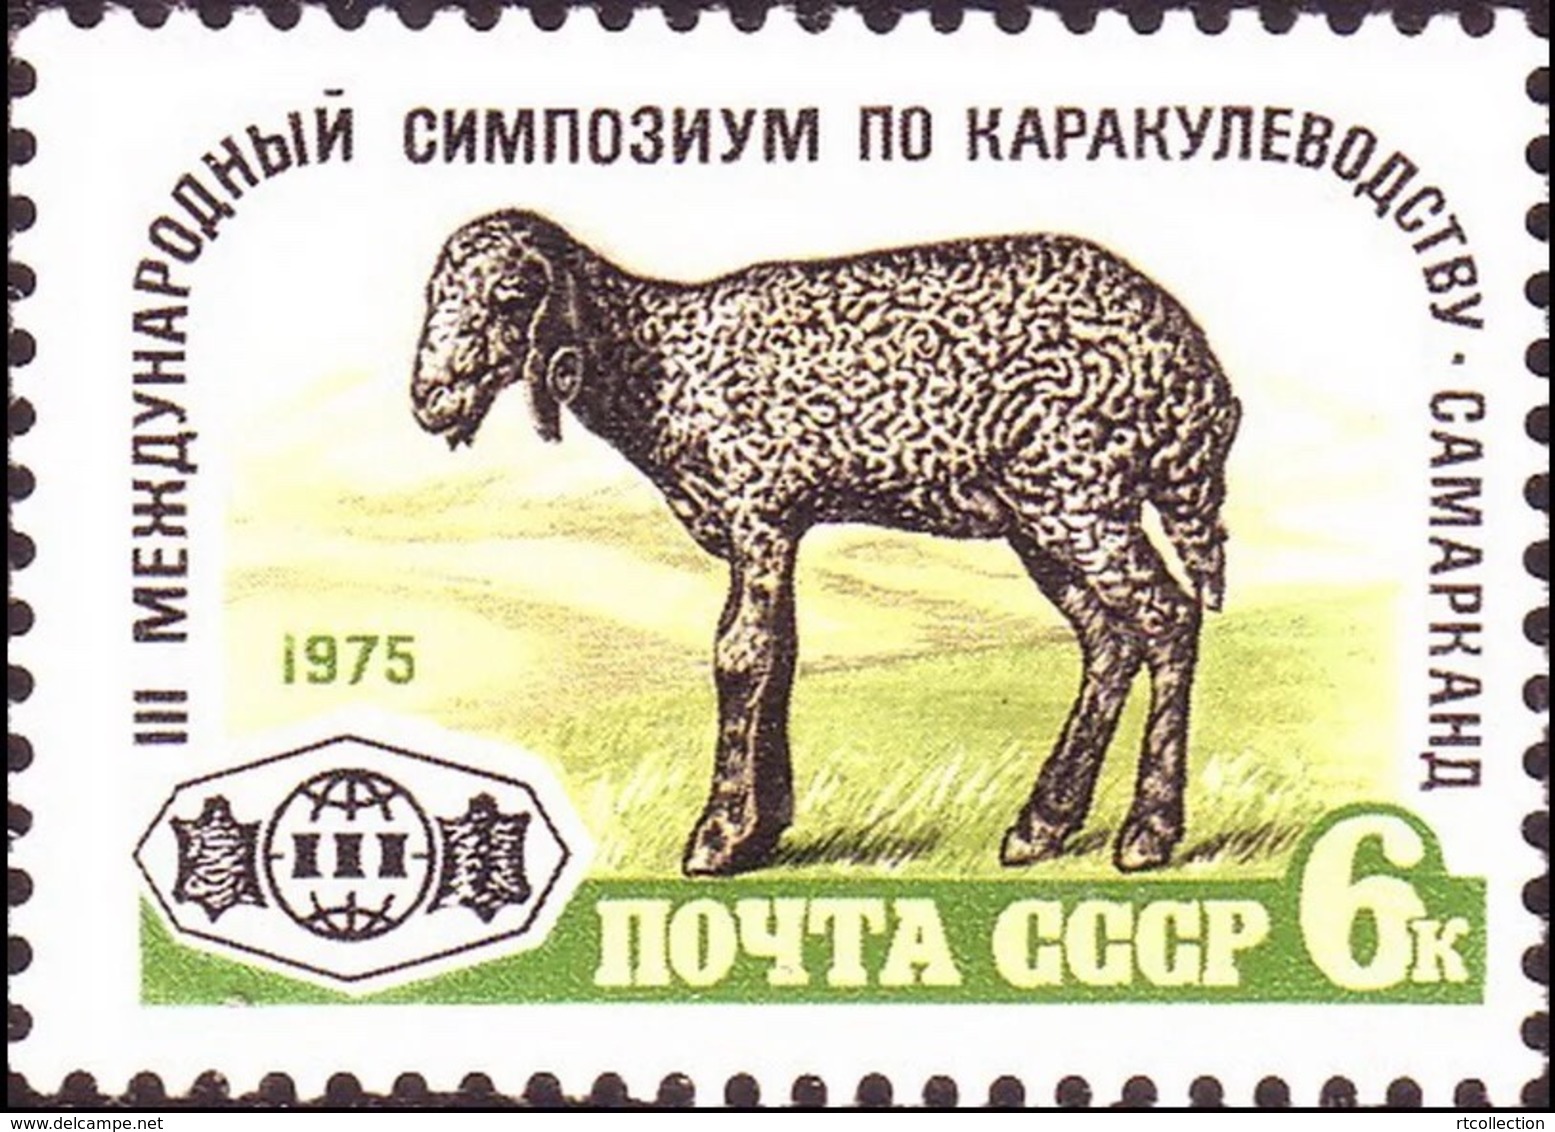 USSR Russia 1975 3rd International Astrakhan Lamb Breeding Fauna Animals Mammals Farm Sheep Stamp MNH Michel 4405 - Farm